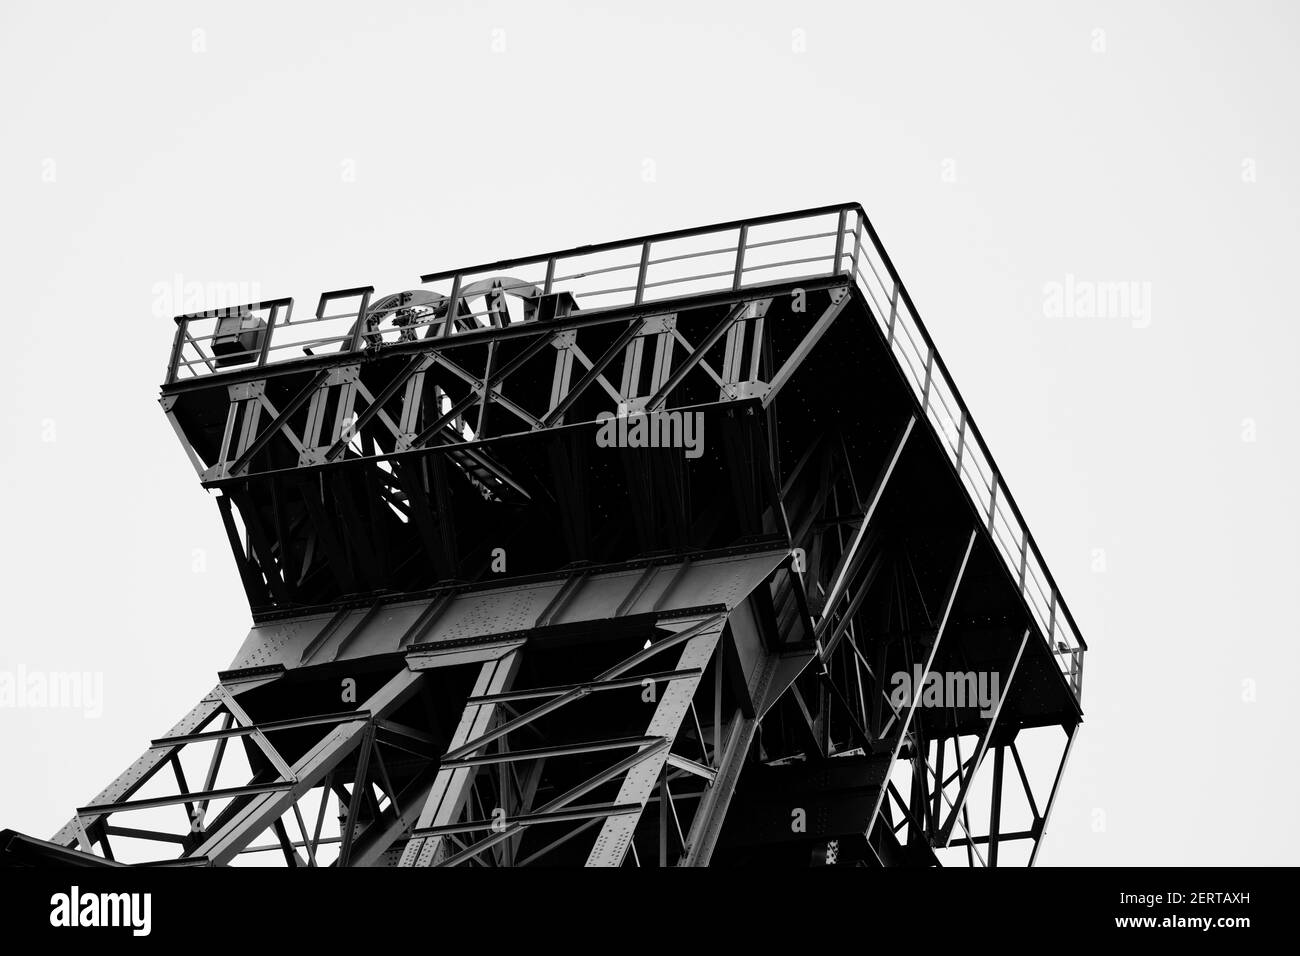 La collierie Radbod à Hamm, Rhénanie-du-Nord-Westphalie. Usine industrielle désaffectée. Mine de charbon Banque D'Images